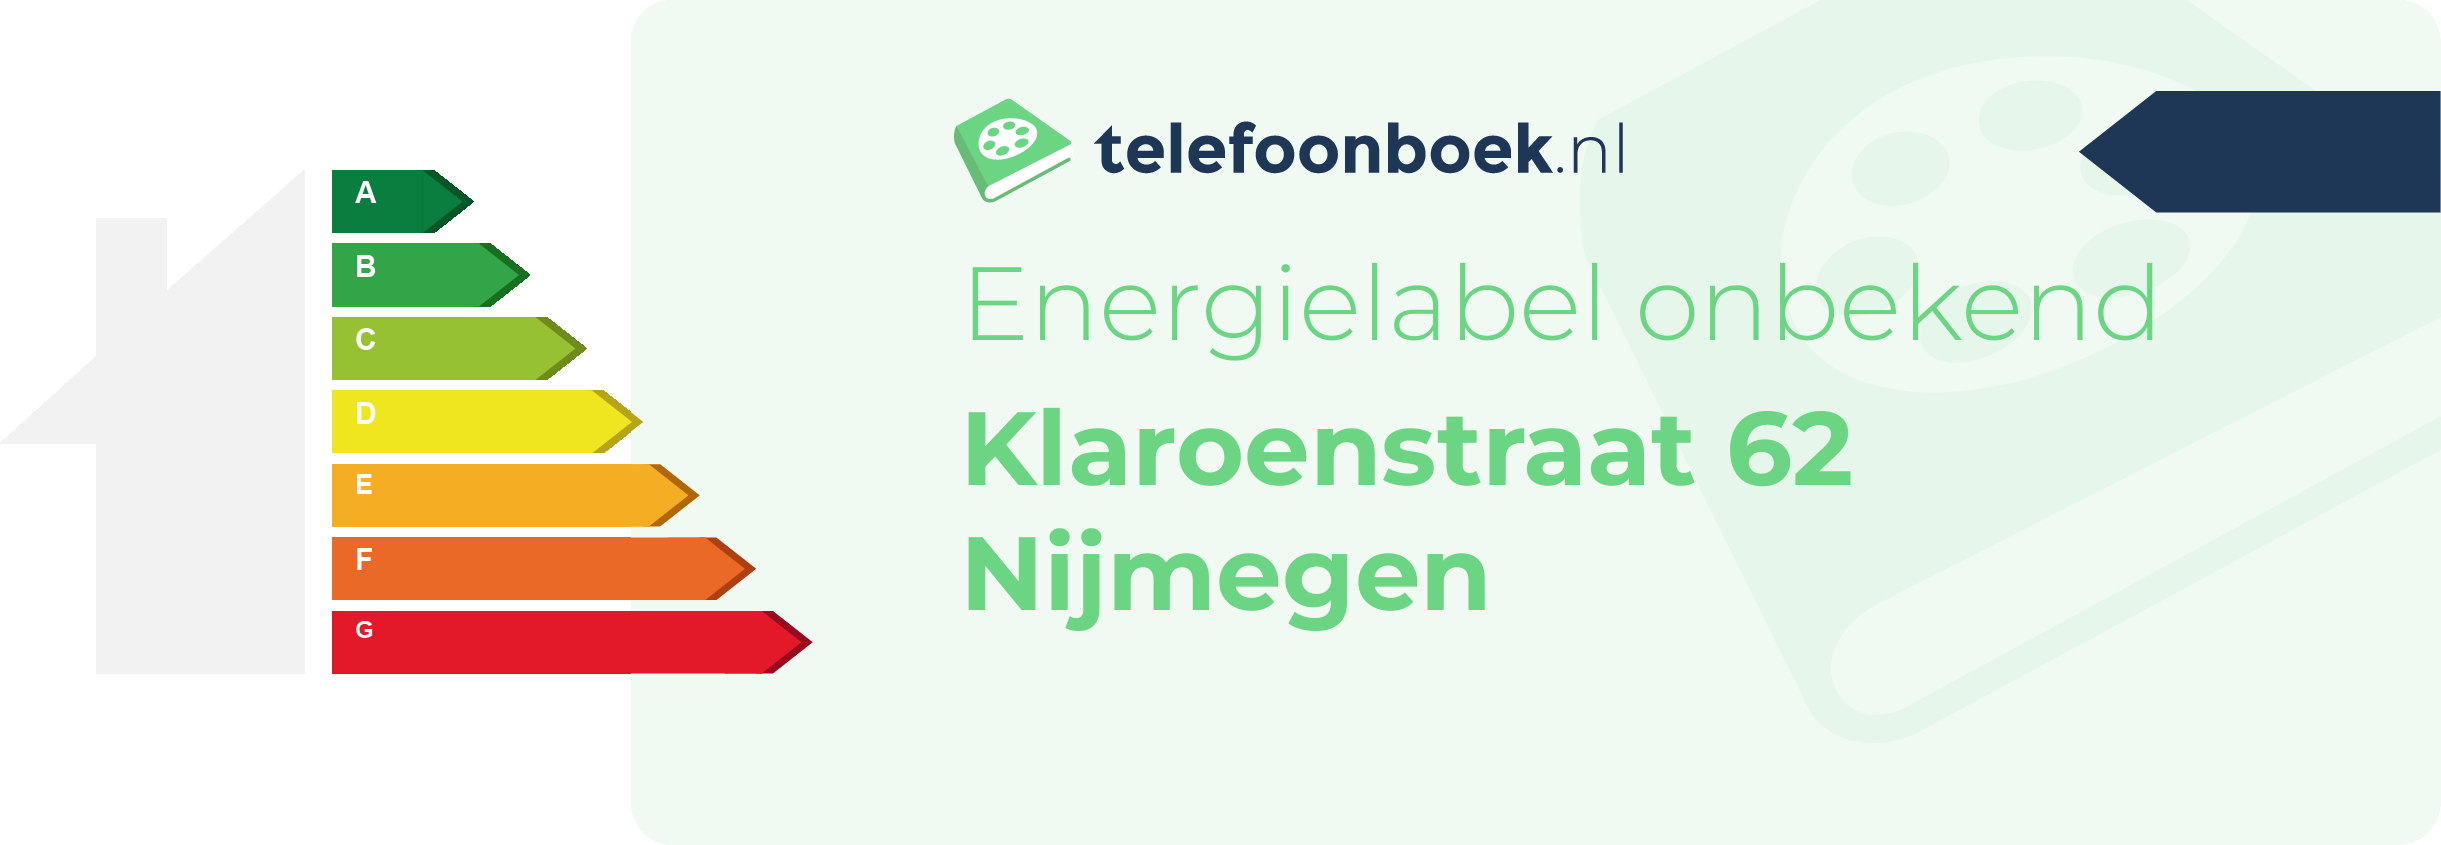 Energielabel Klaroenstraat 62 Nijmegen